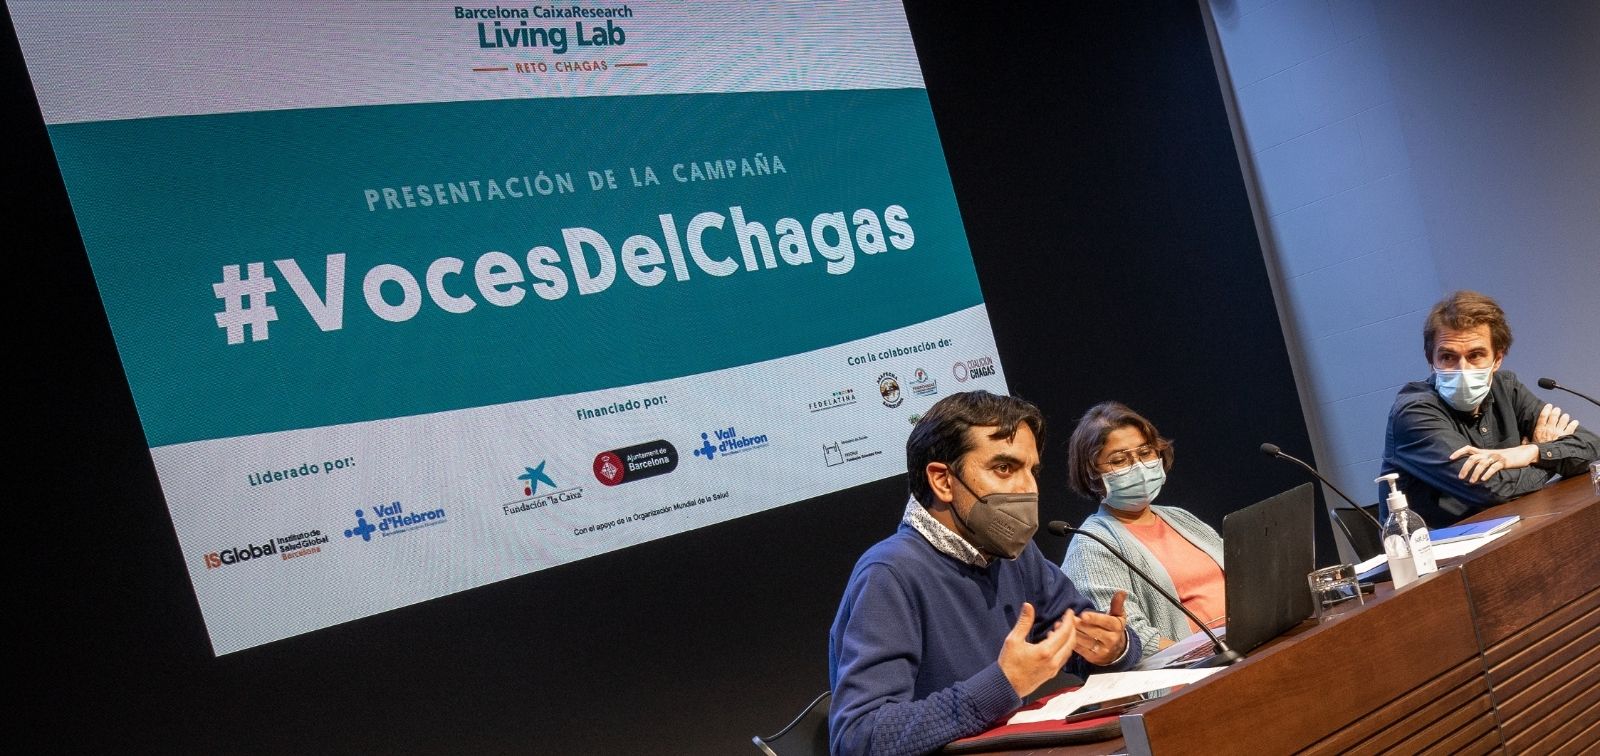 Completem el repte Chagas en el marc del projecte Barcelona CaixaResearch Living Lab